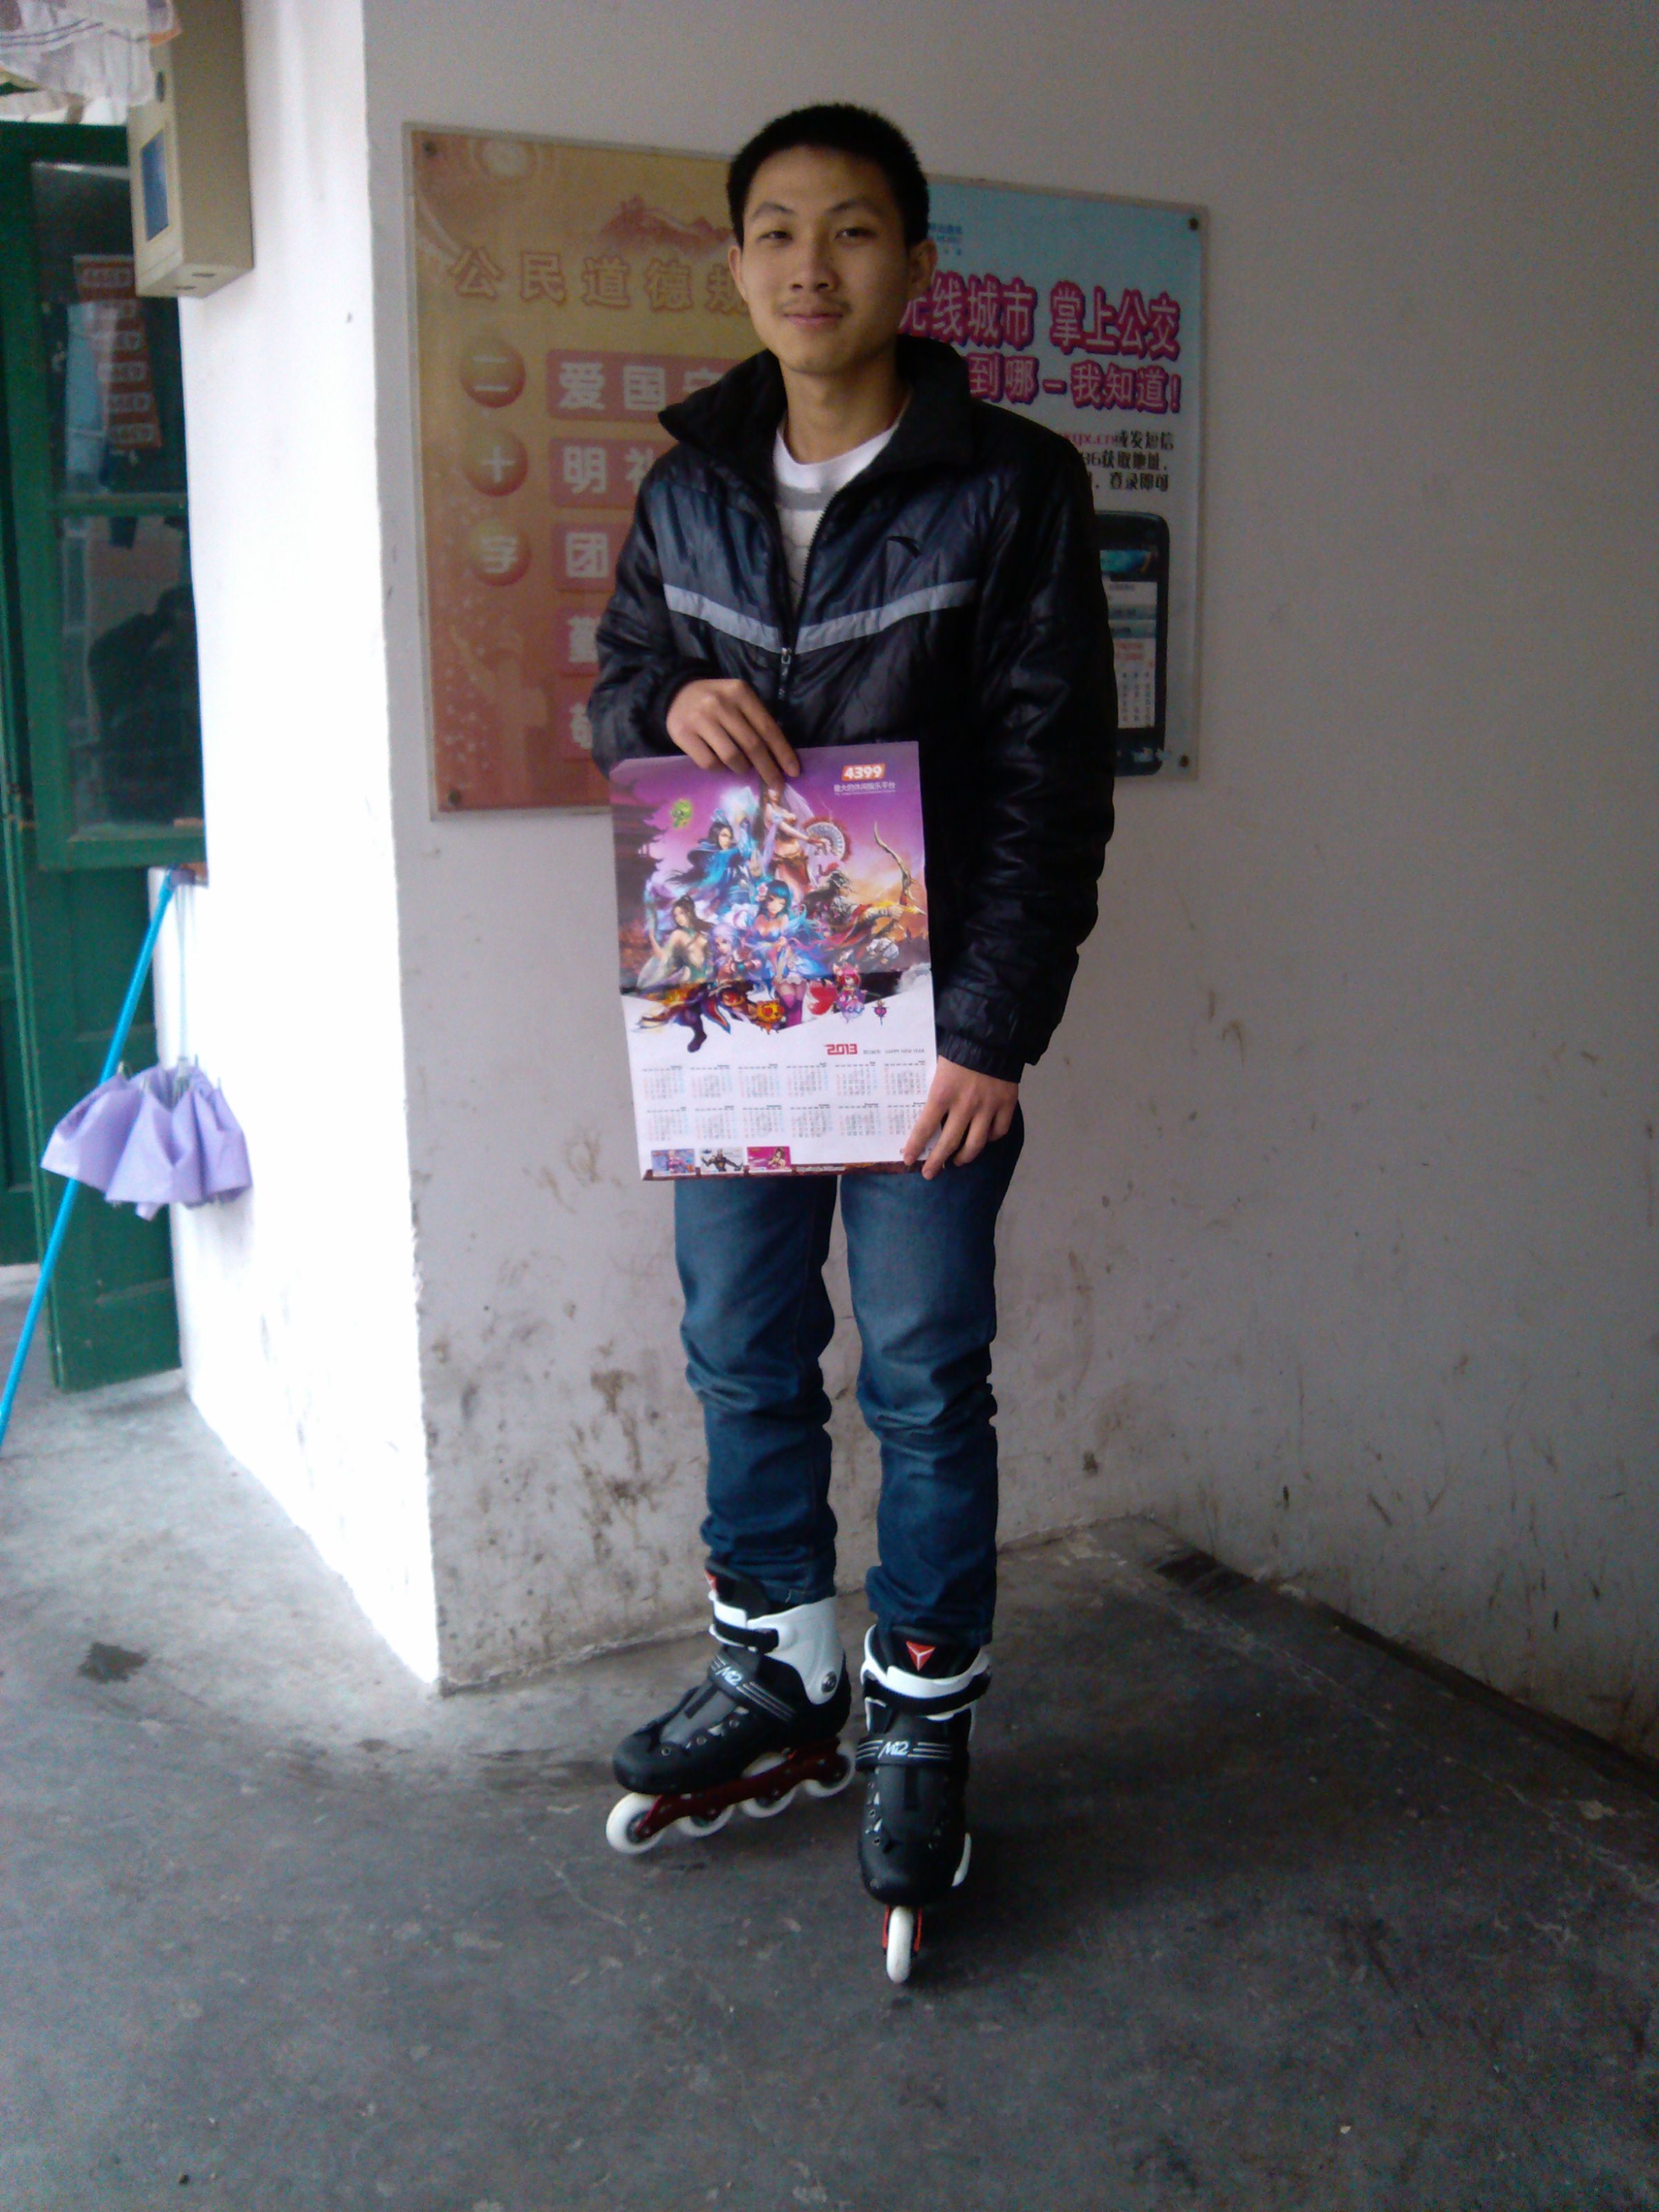 广西站—获得溜冰鞋的玩家